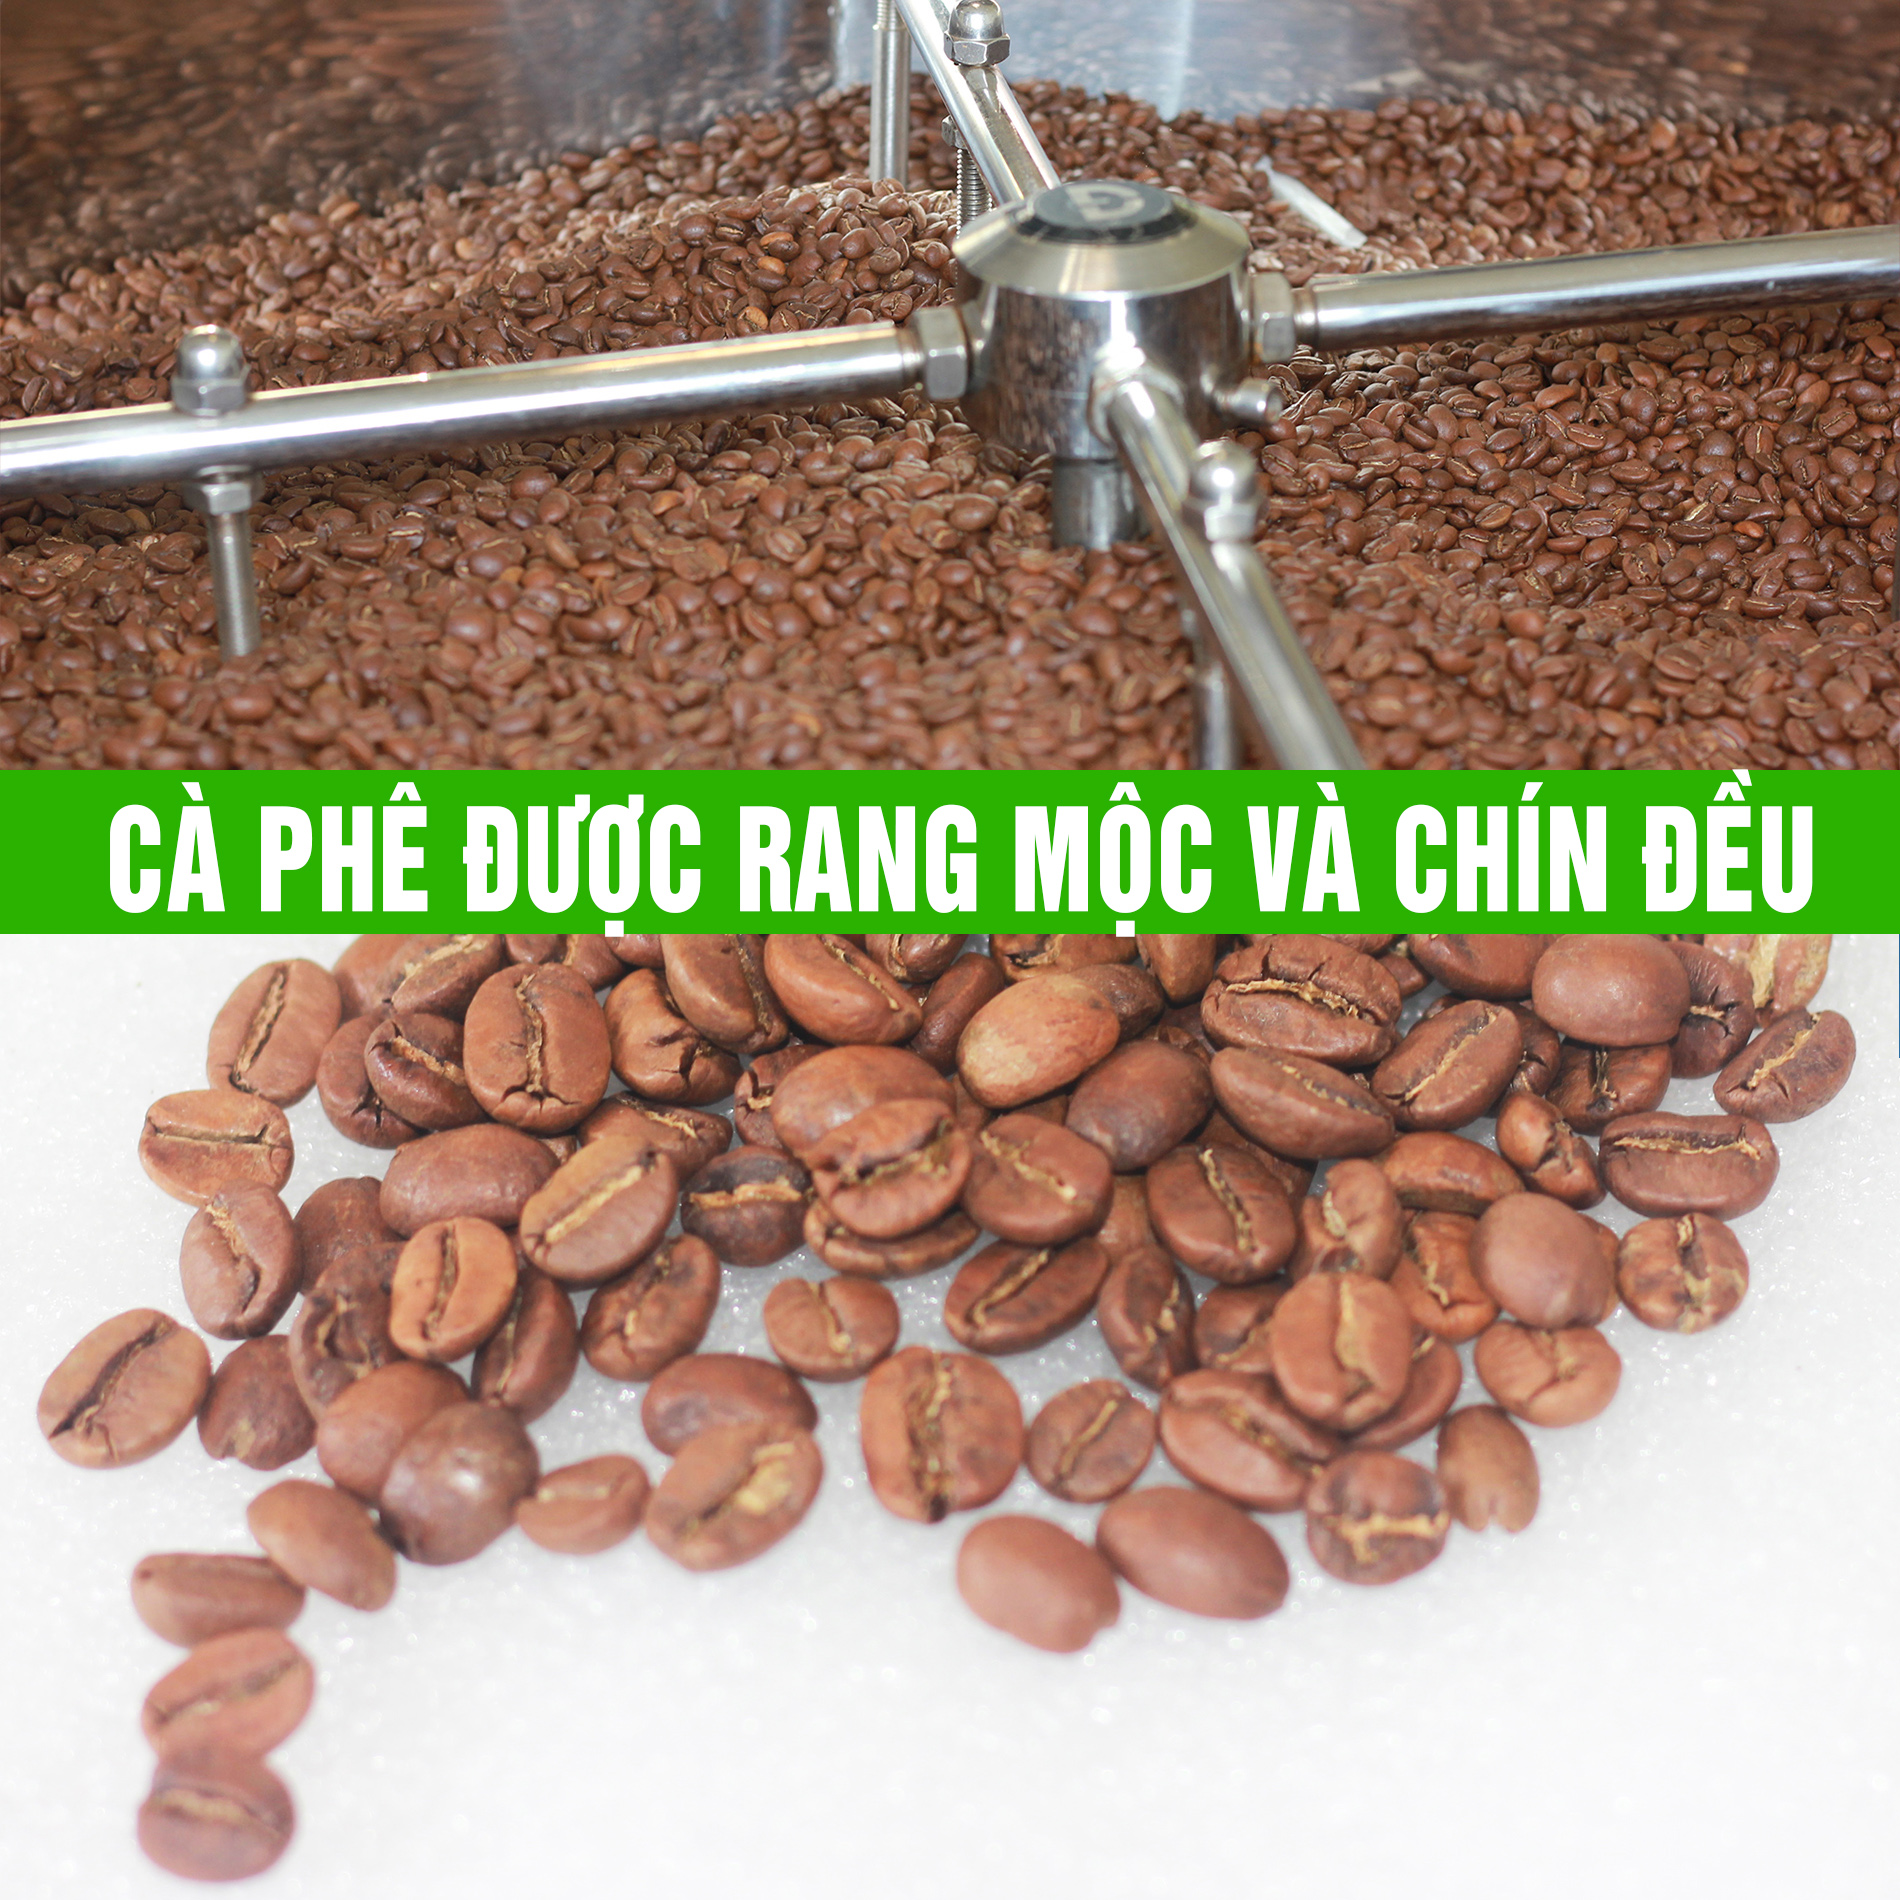 coffee 1kg cà phê rang mộc gói đậm gu thành phần 80% robusta + 20% arabica - cafe ngon nguyên chất đến từ đắk lắk - 2 gói mỗi gói 500gr - cam kết nguyên chất - xay sẵn dùng pha phin 7